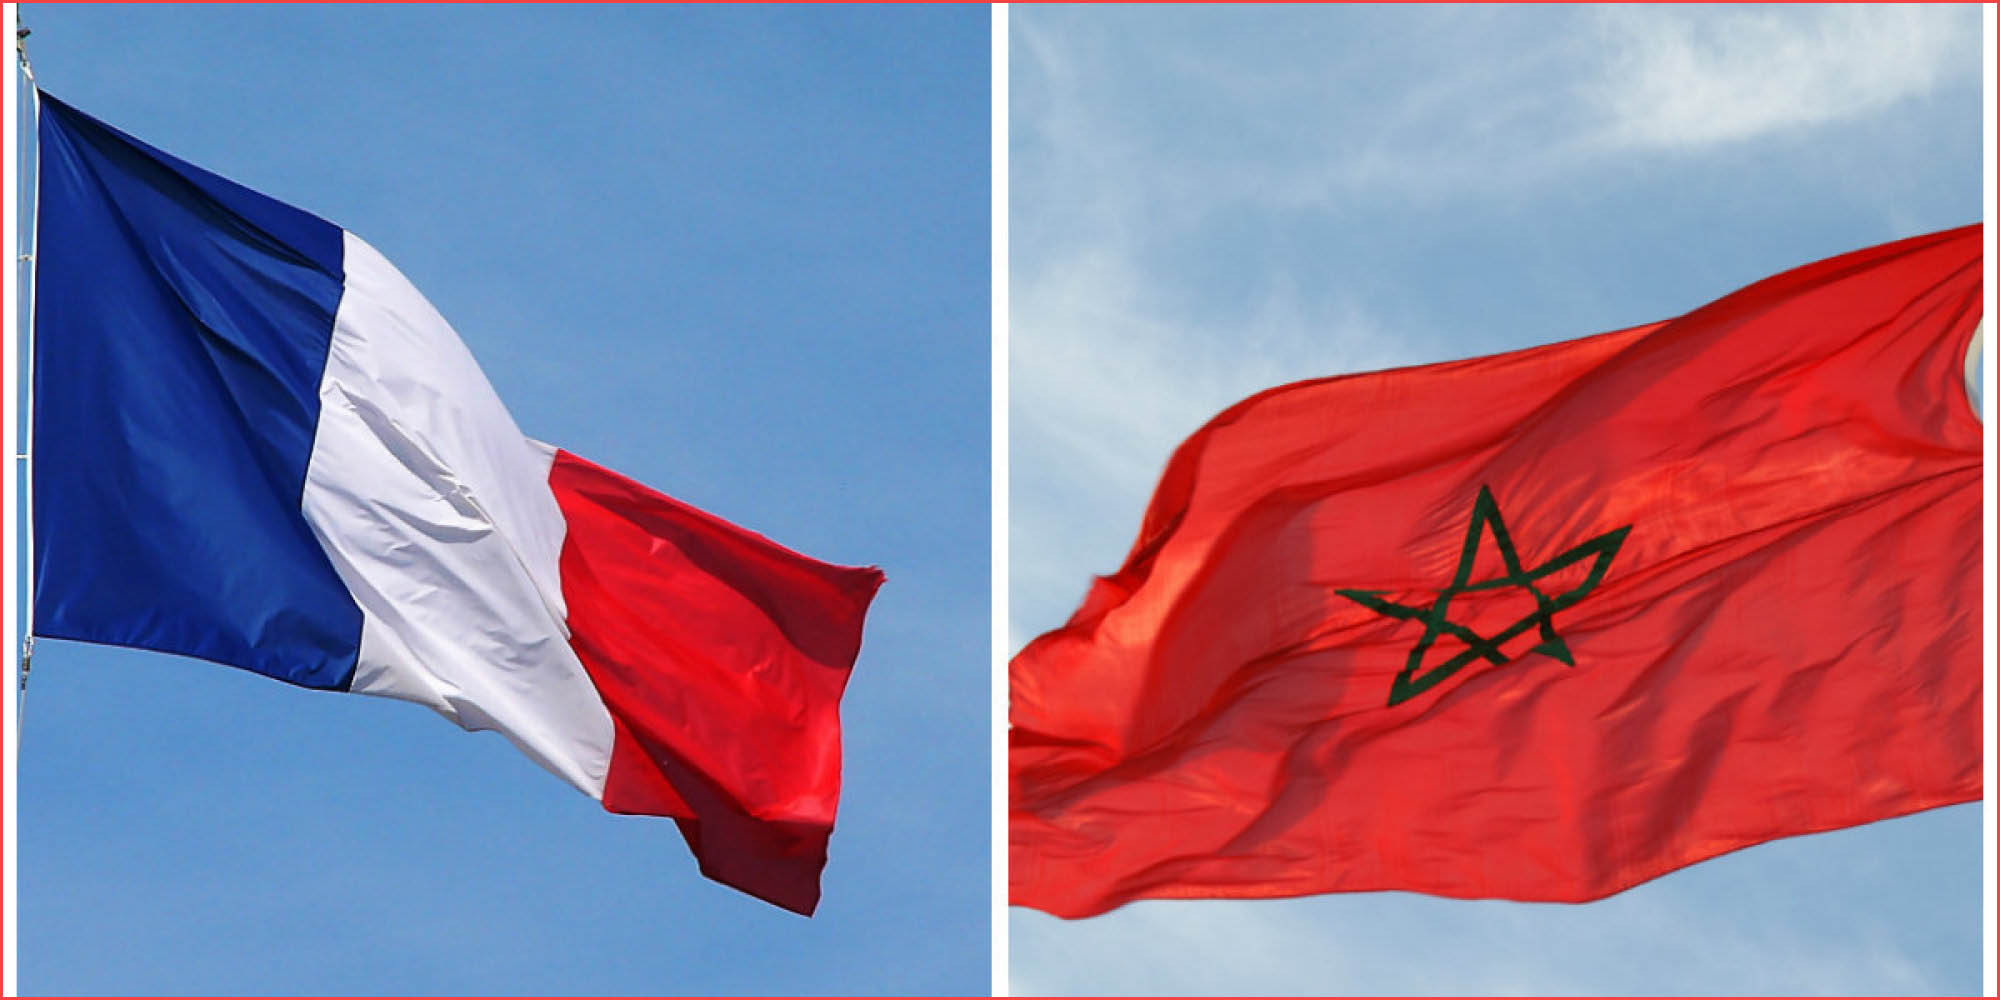 الطوسة: على فرنسا تبني خطاب يتسم بالحقيقة والوضوح  يهم قضية الصحراء المغربية